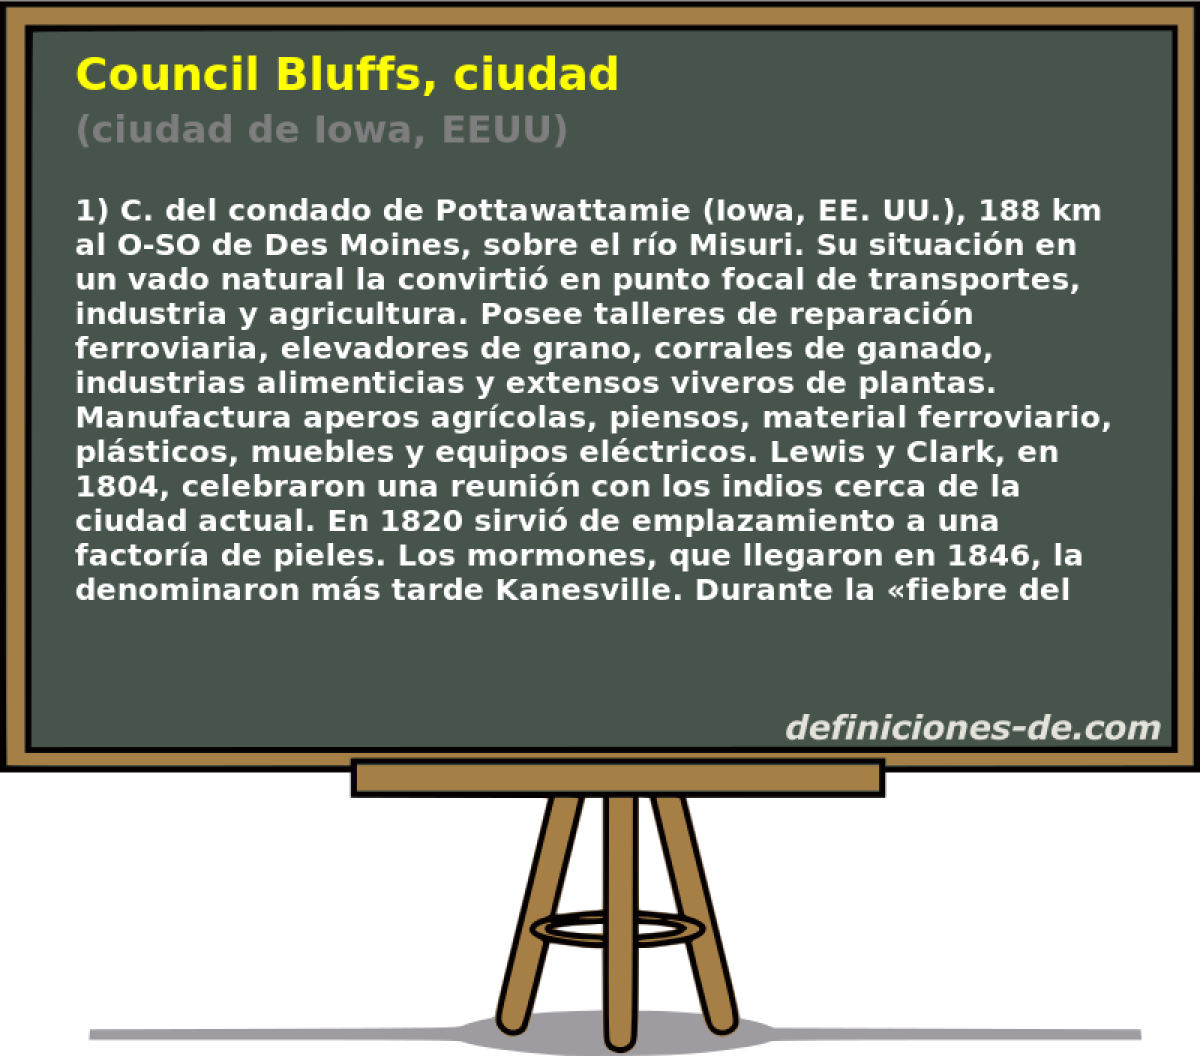 Council Bluffs, ciudad (ciudad de Iowa, EEUU)